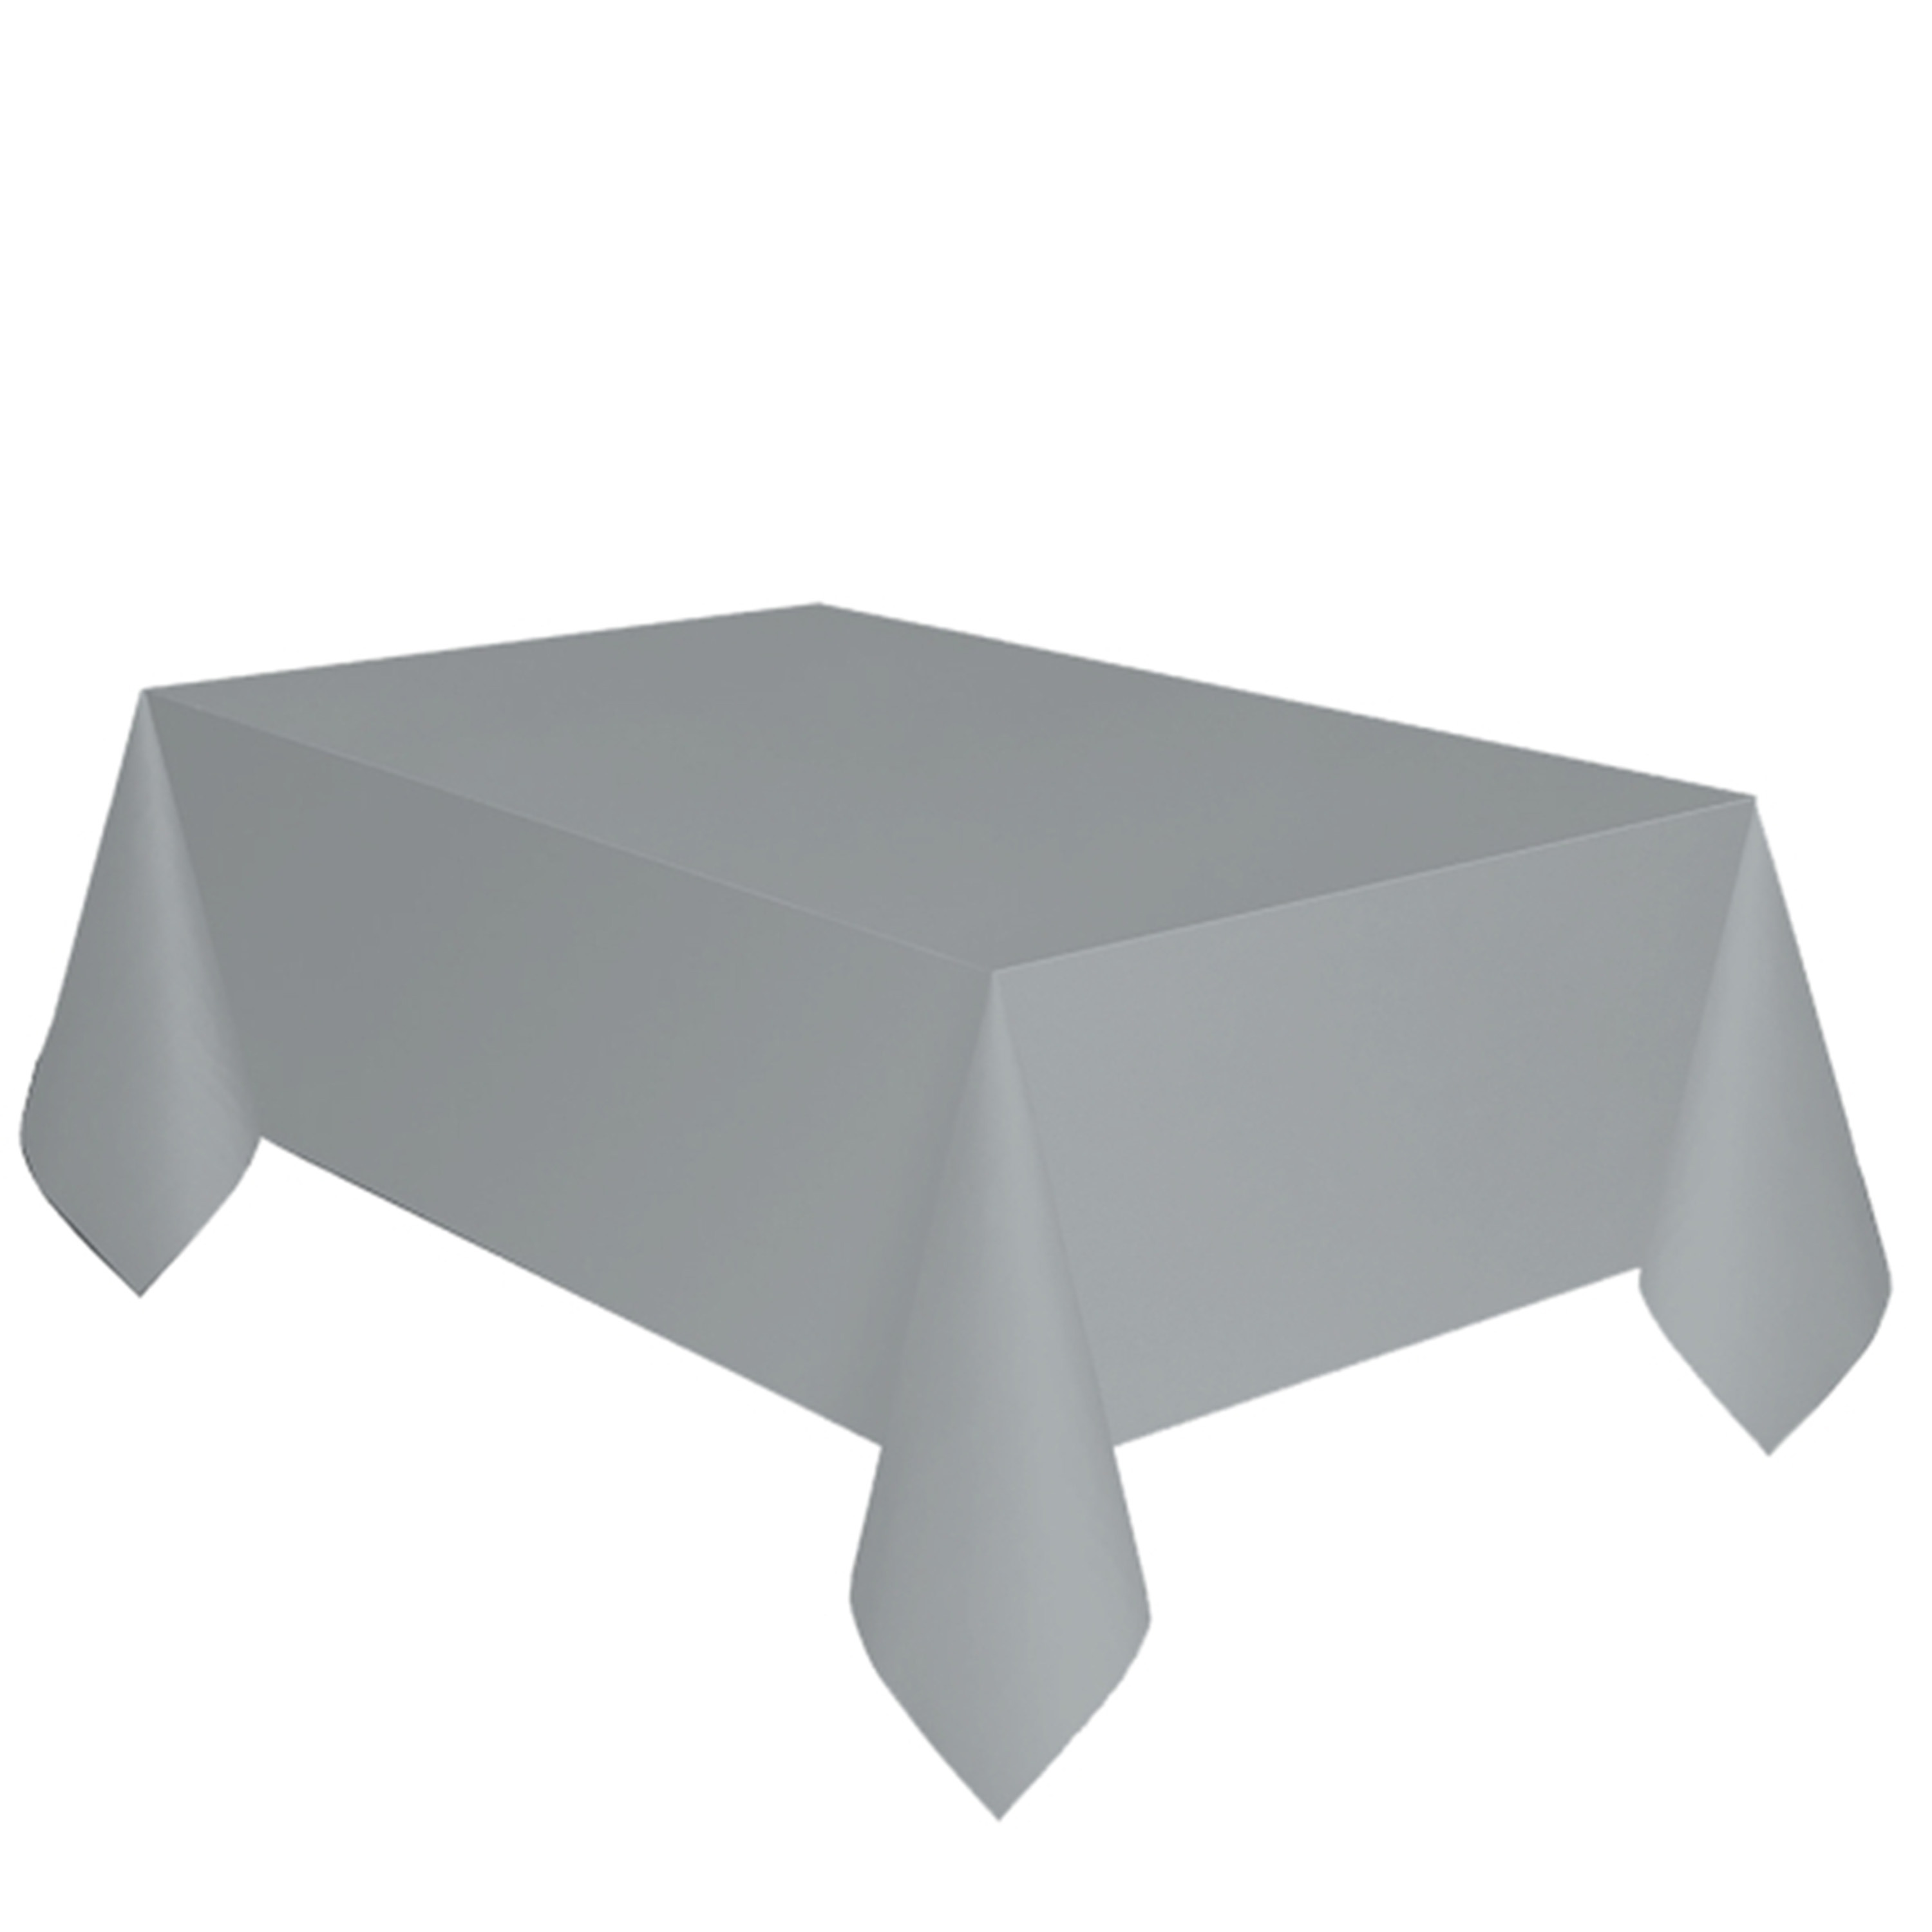 Merkloos Feest versiering licht zilver grijze tafelkleed 137 x 274 cm papier -